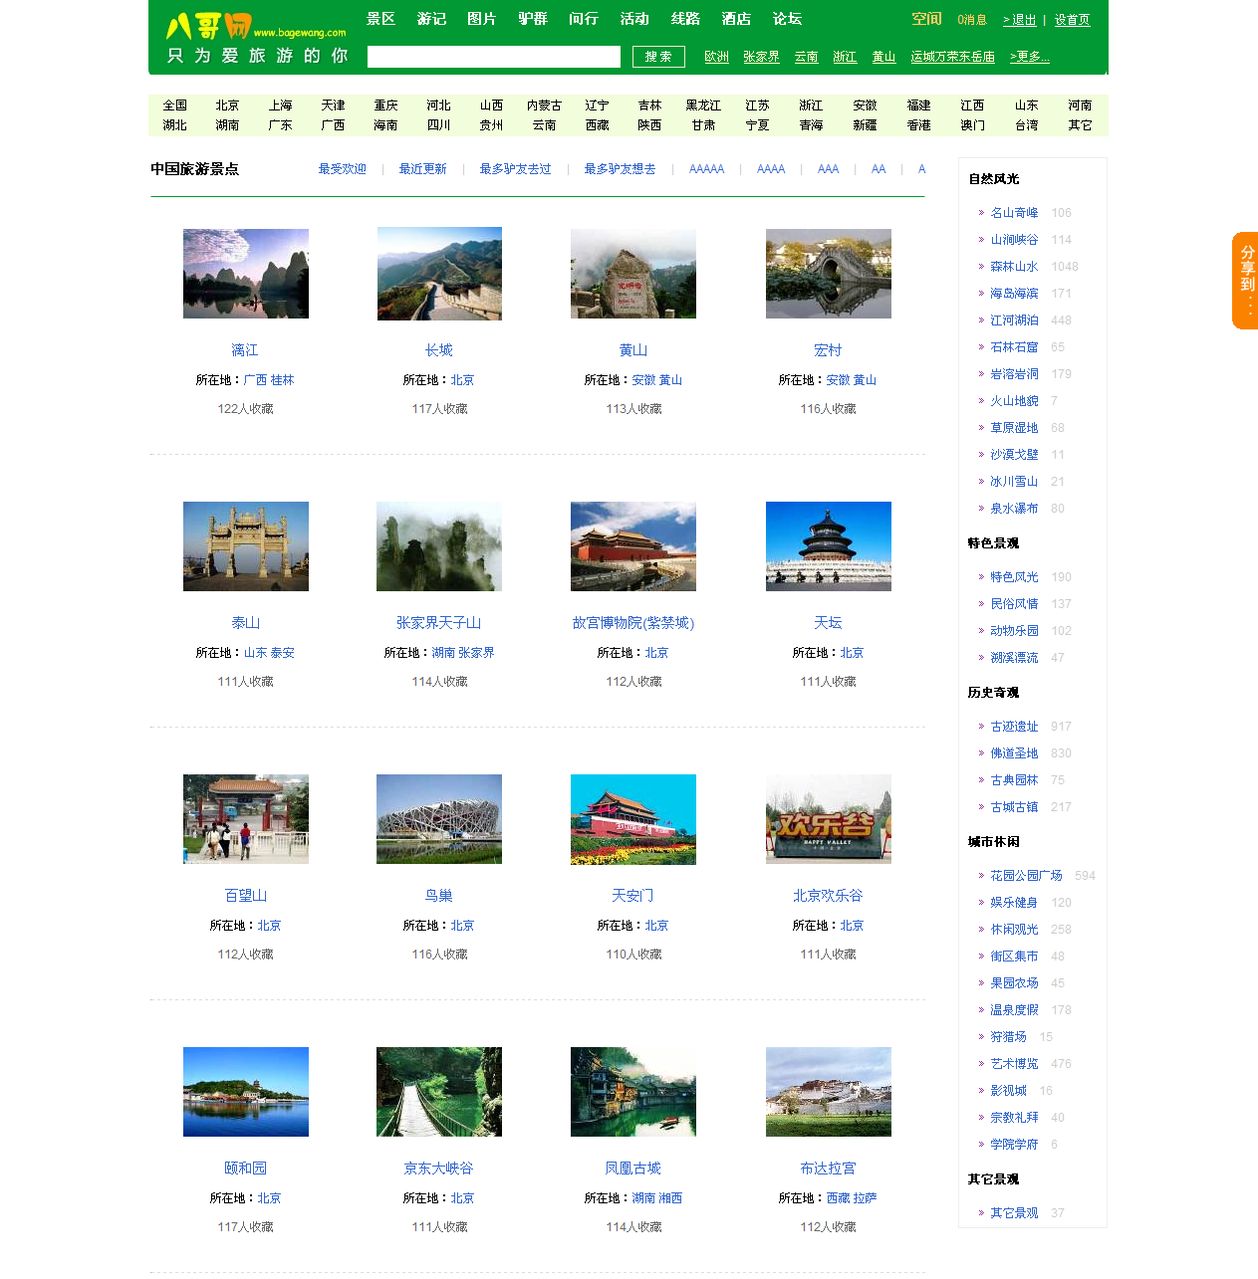 中國旅遊景點圖例